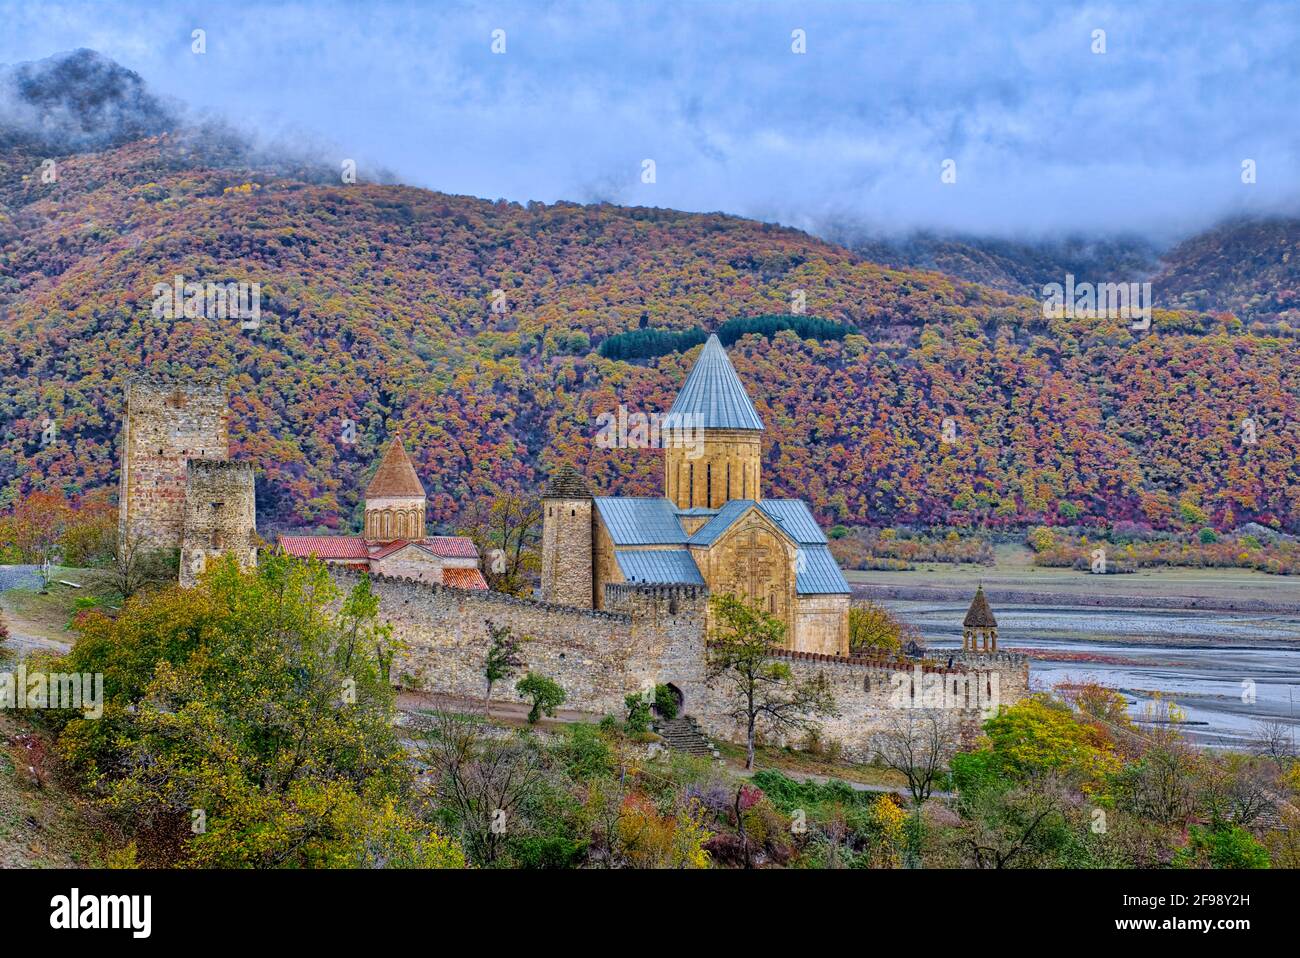 Ananuri est l'un des endroits les plus touristiques de Géorgie. C'est une forteresse avec une paire d'églises et une tour défensive du XIe siècle à l'intérieur. La forteresse com Banque D'Images